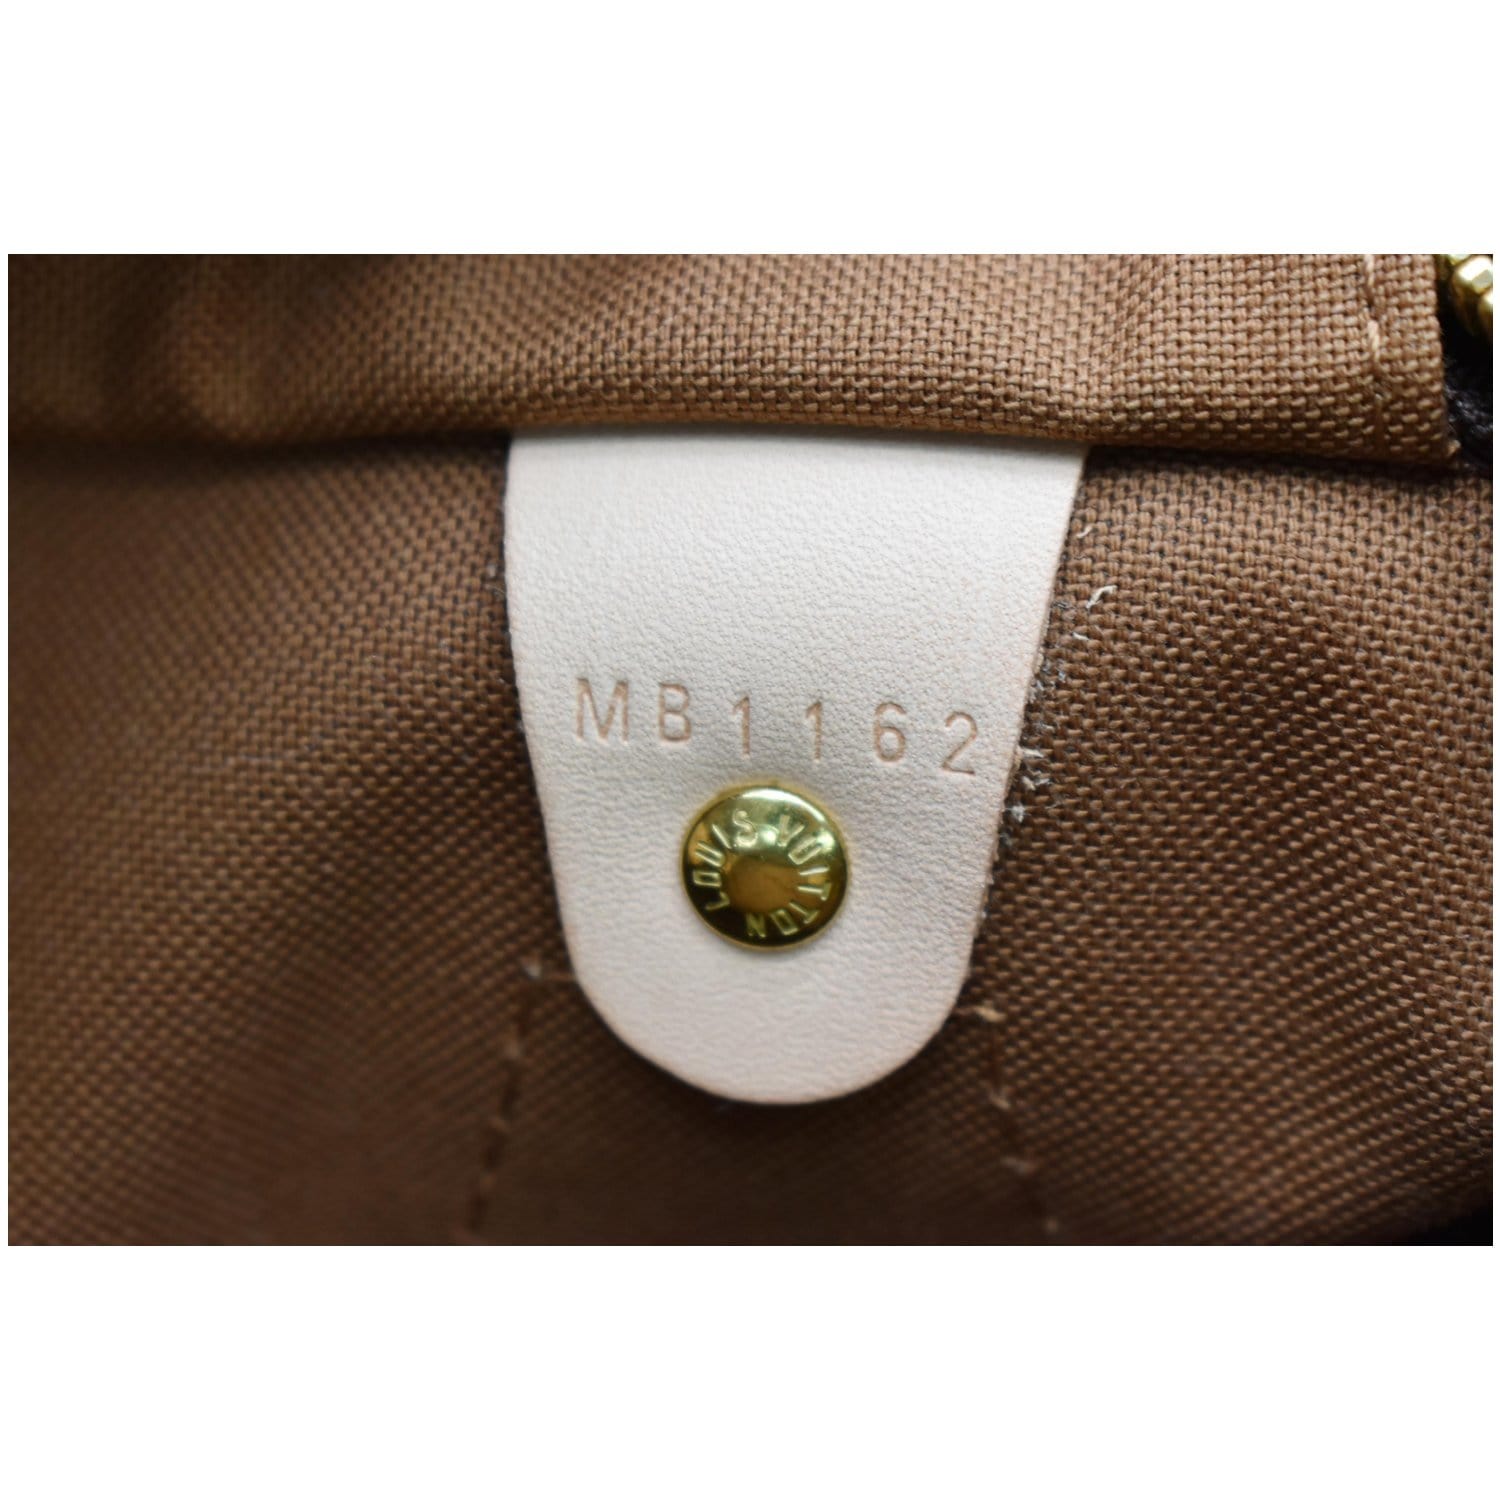 Speedy handbag Louis Vuitton Brown in Cotton - 31733862